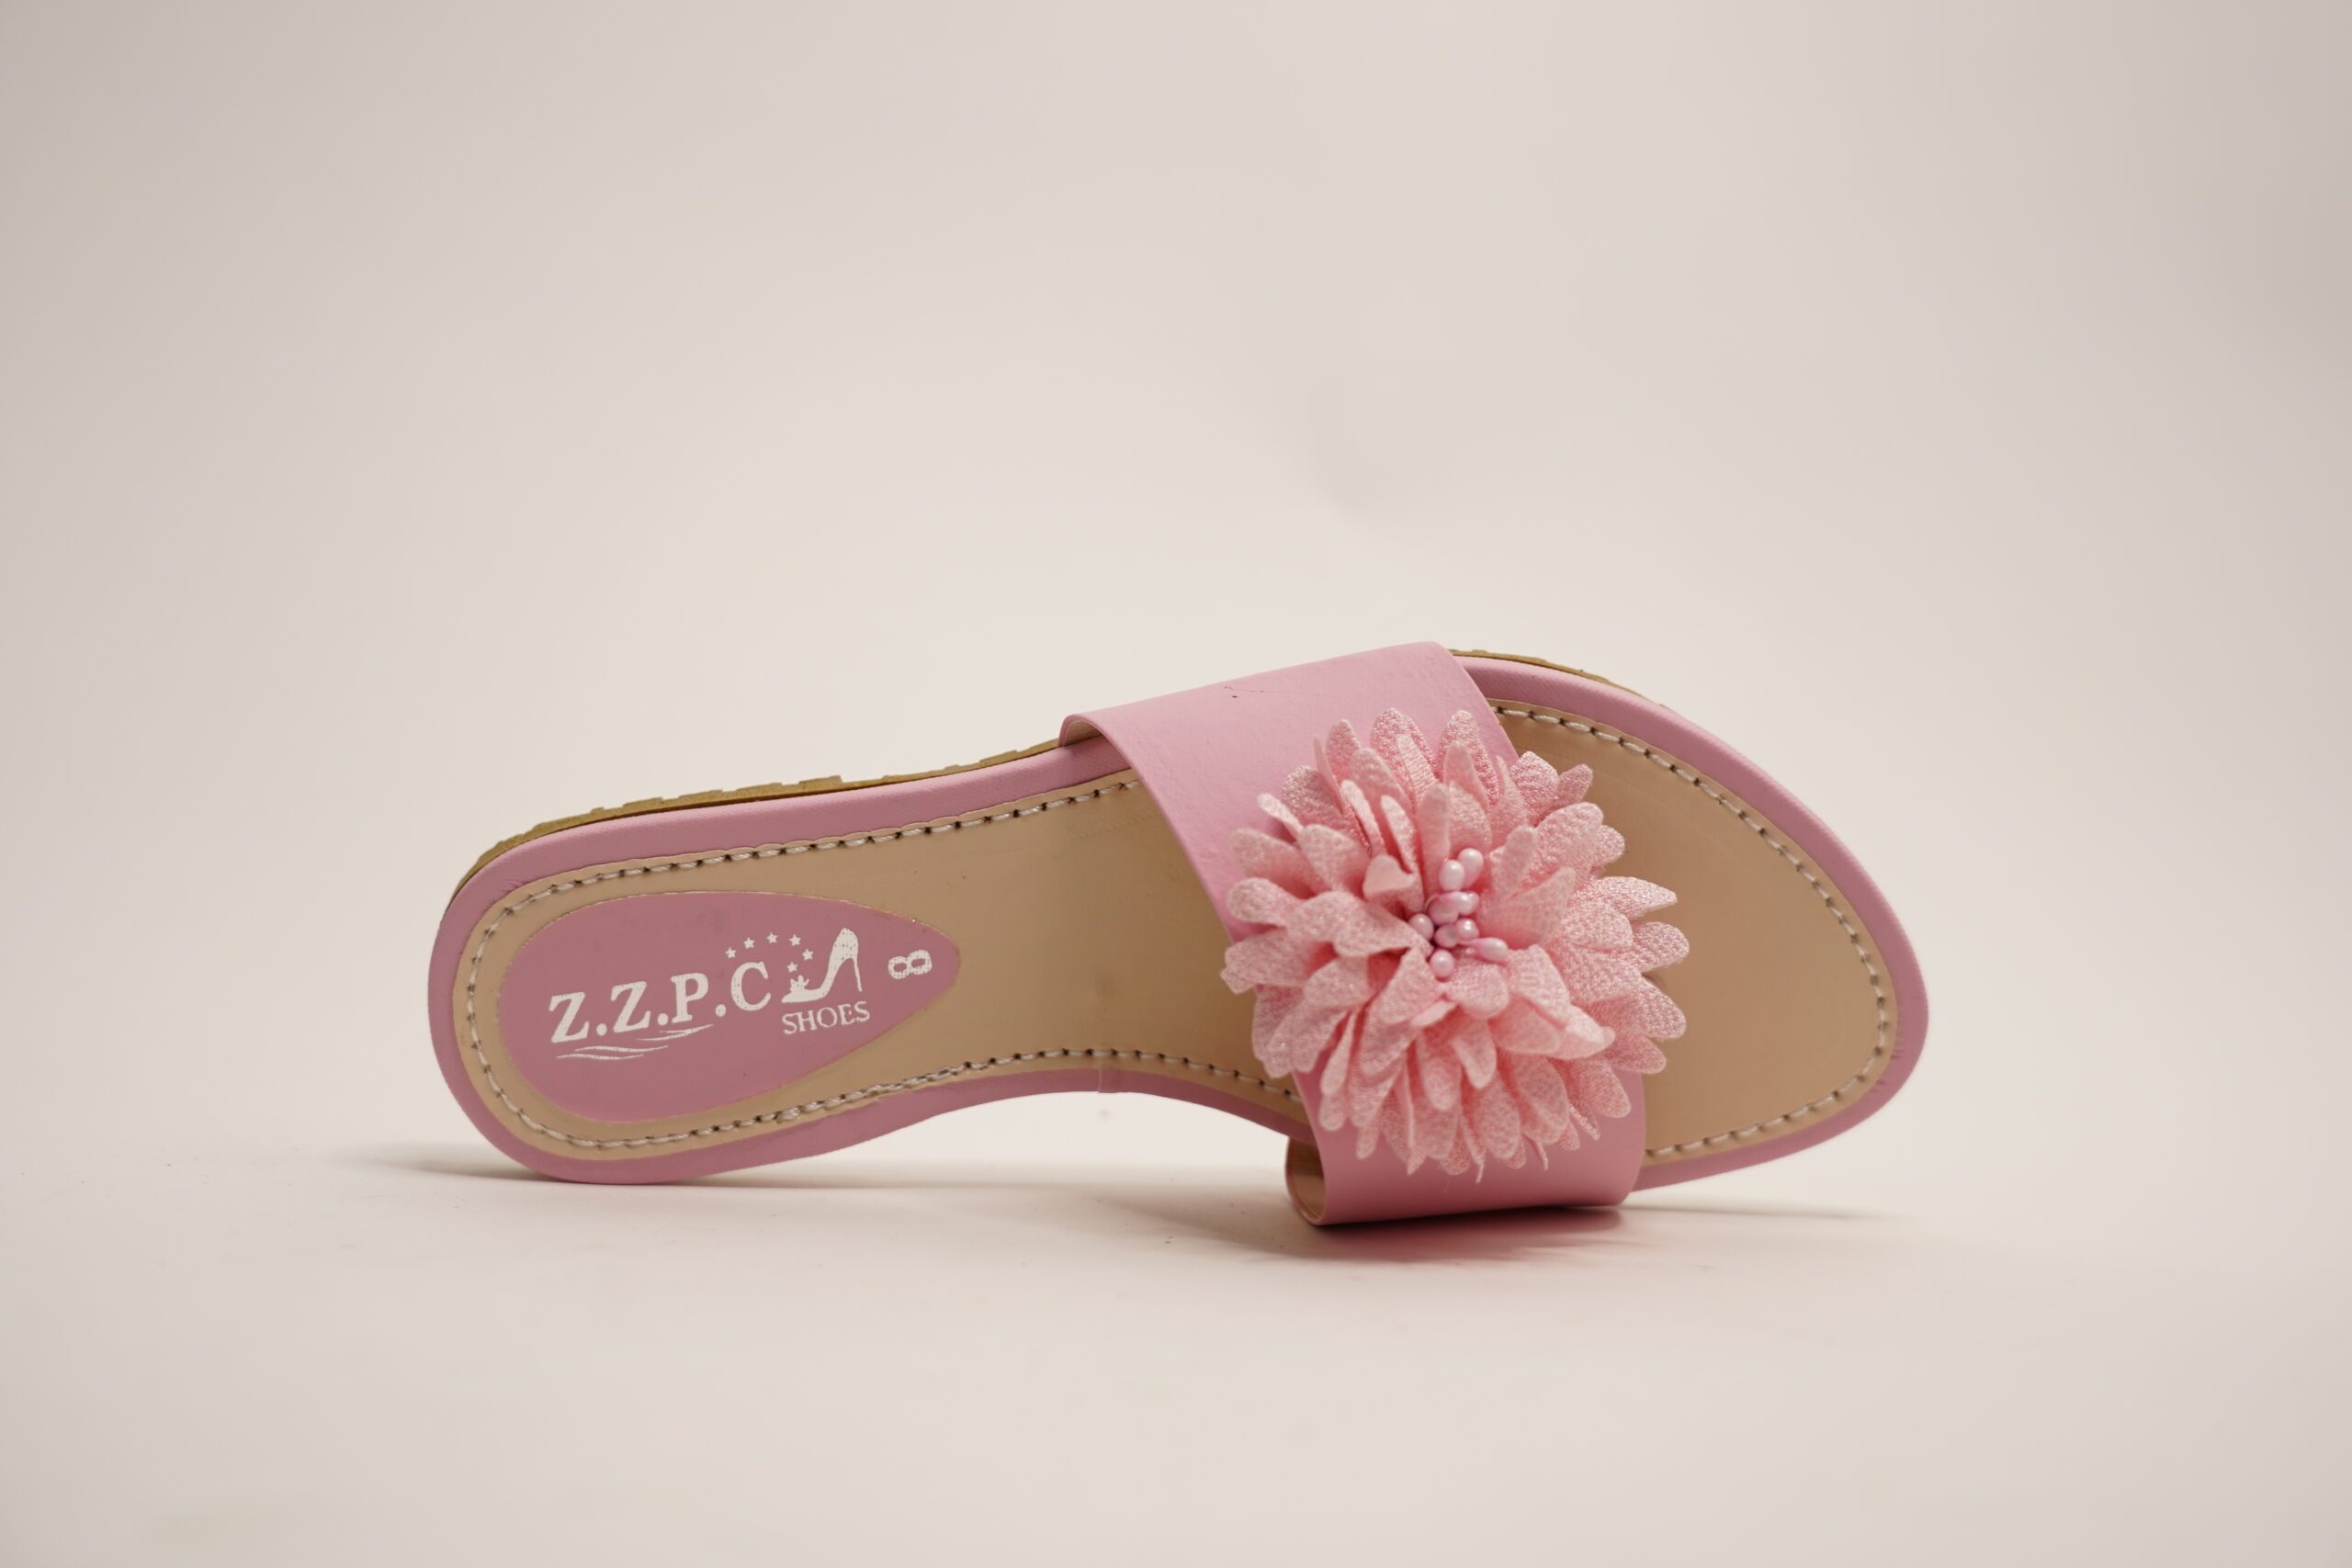 Stylish Flower Slippers For Women's In Pakistan